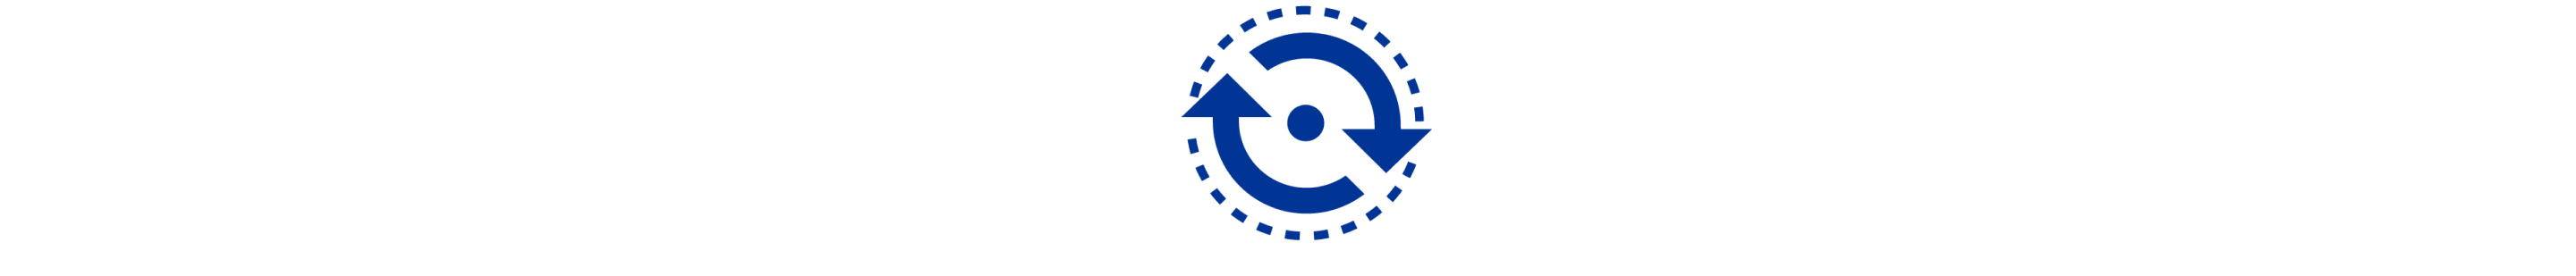 Ein blaues Symbol, das einen gepunkteten Kreis zeigt und zwei Pfeile, die um einen  kleinen Punkt als Kreis angeordnet sind.